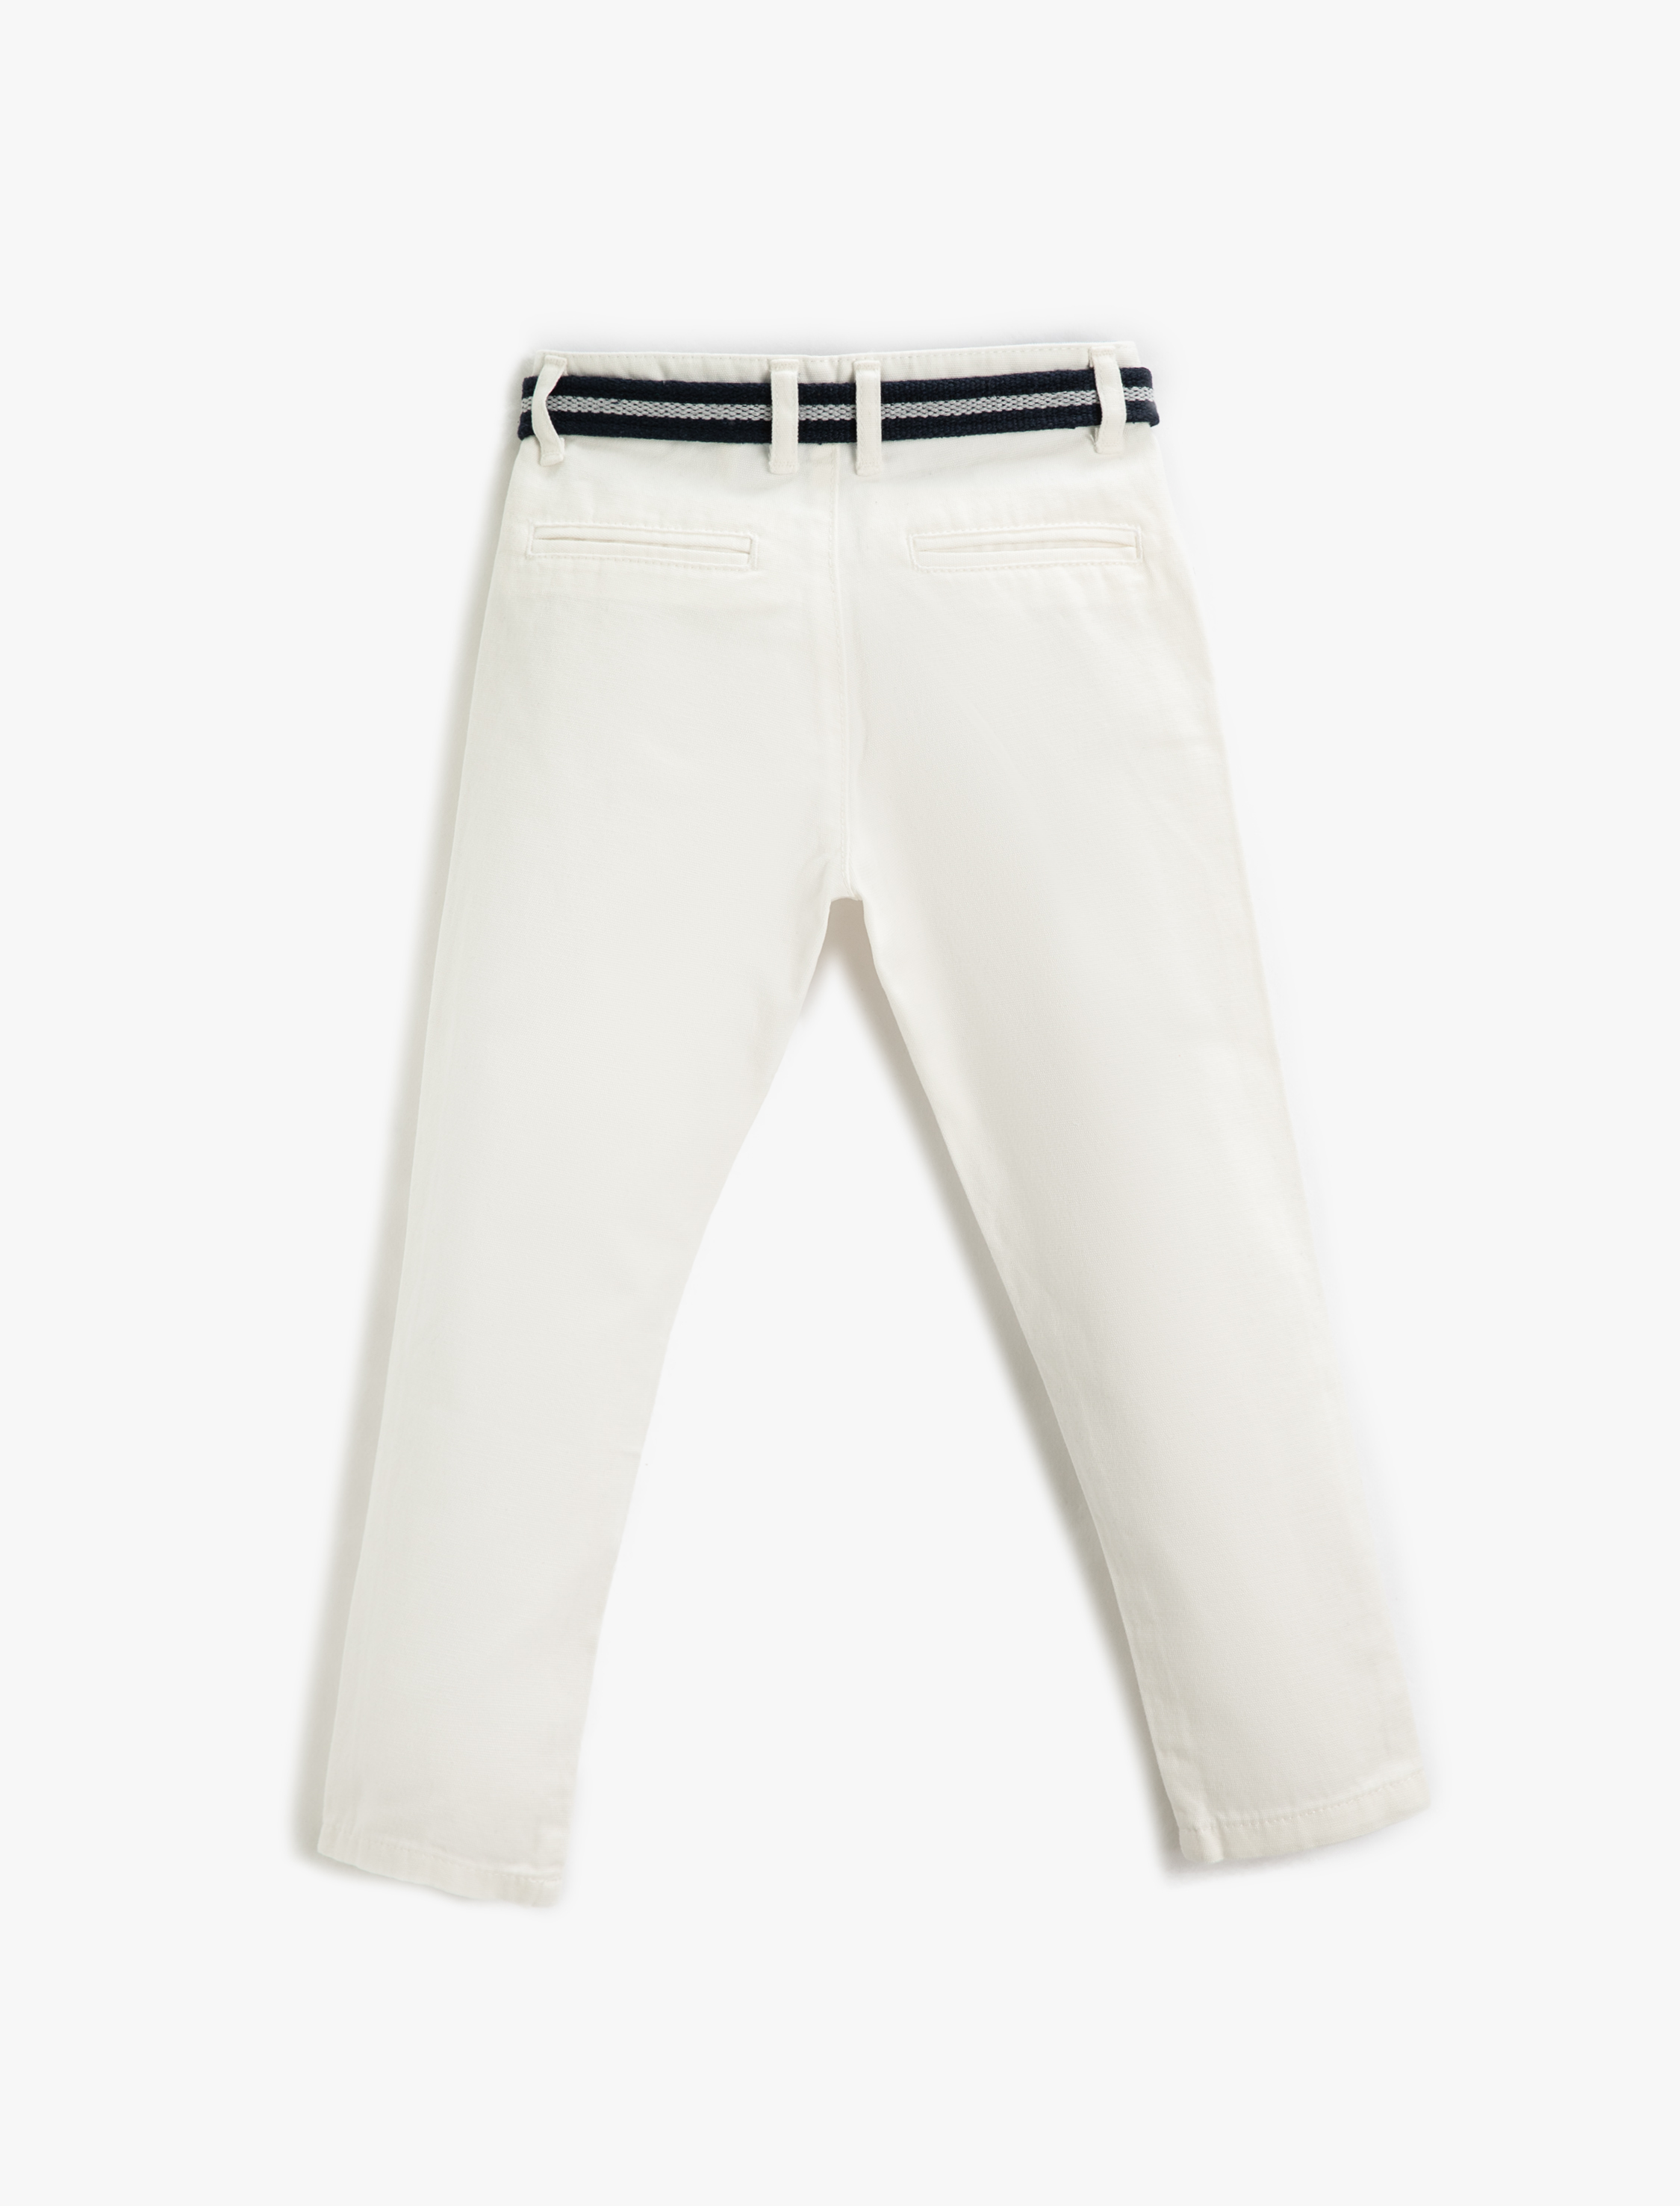 Koton Kumaş Pantolon Slim Fit Kemerli Cepli Beli Ayarlanabilir Lastikli Beli Ayarlanabilir Lastikli. 5